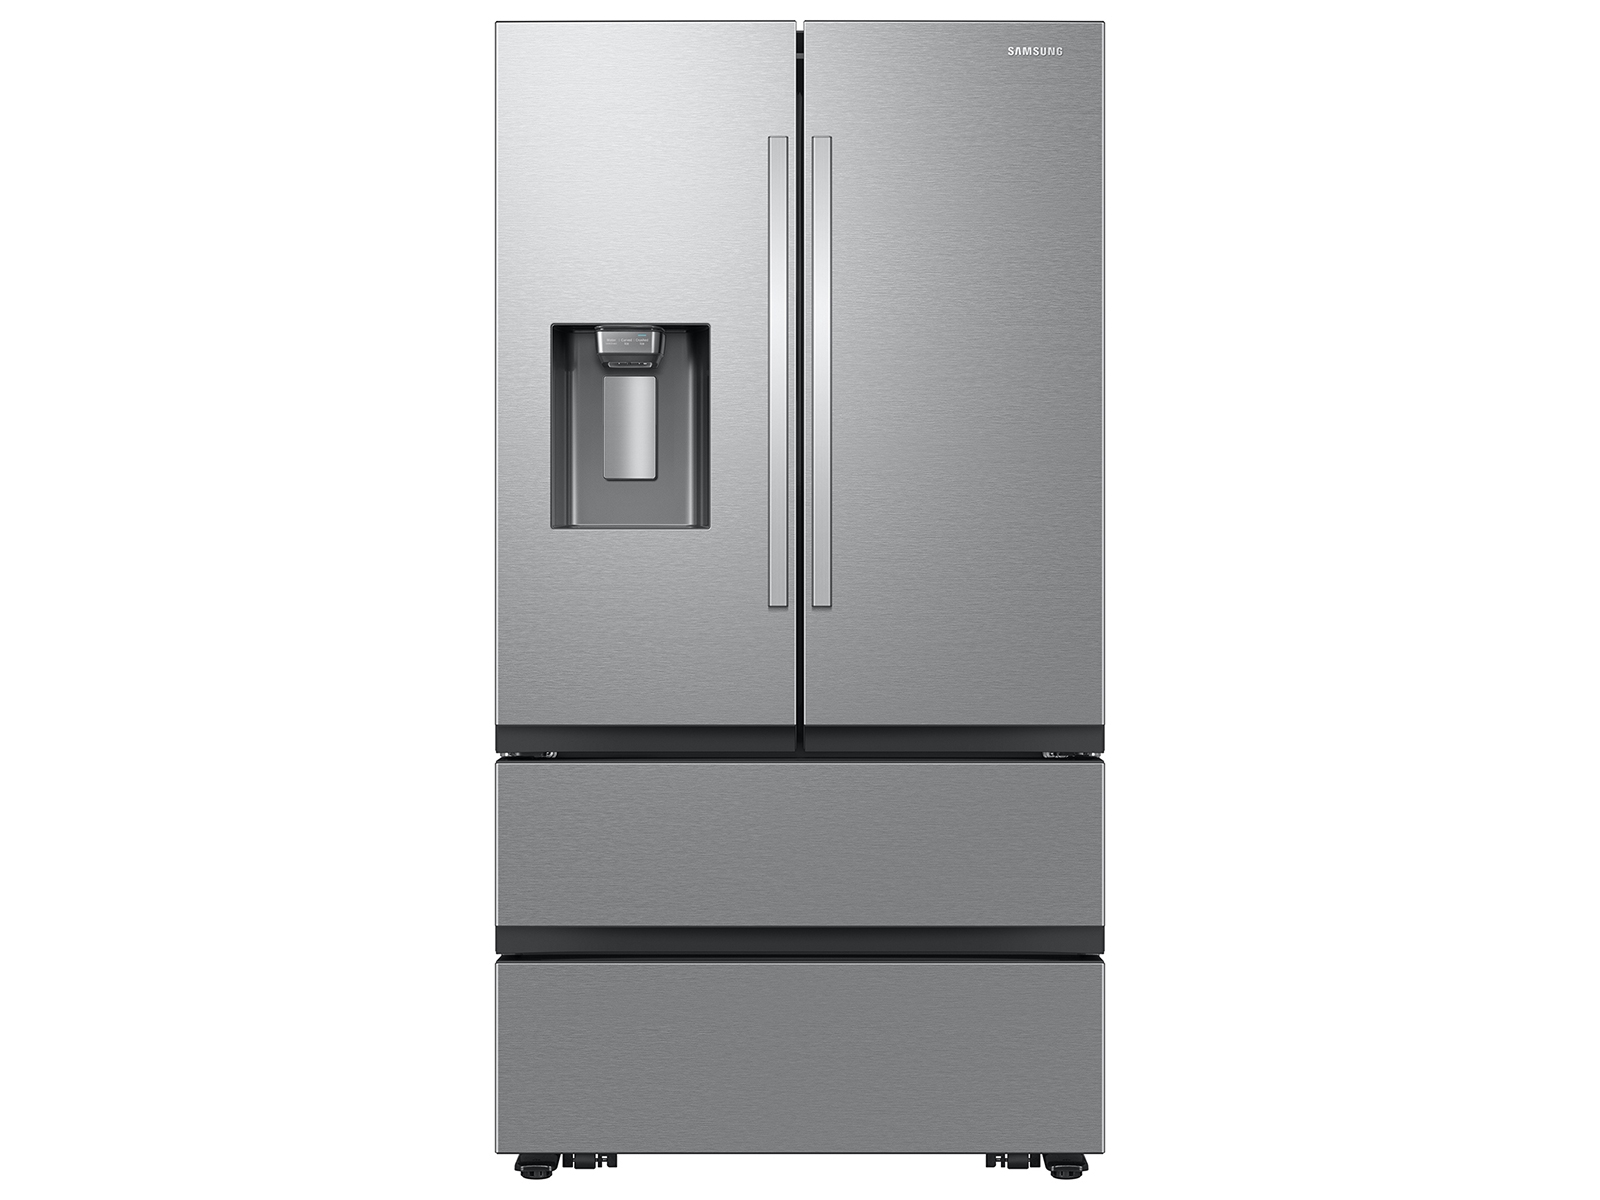 Photos - Fridge Samsung 25 cu. ft. Mega Capacity Counter Depth 4-Door French Door Refriger 